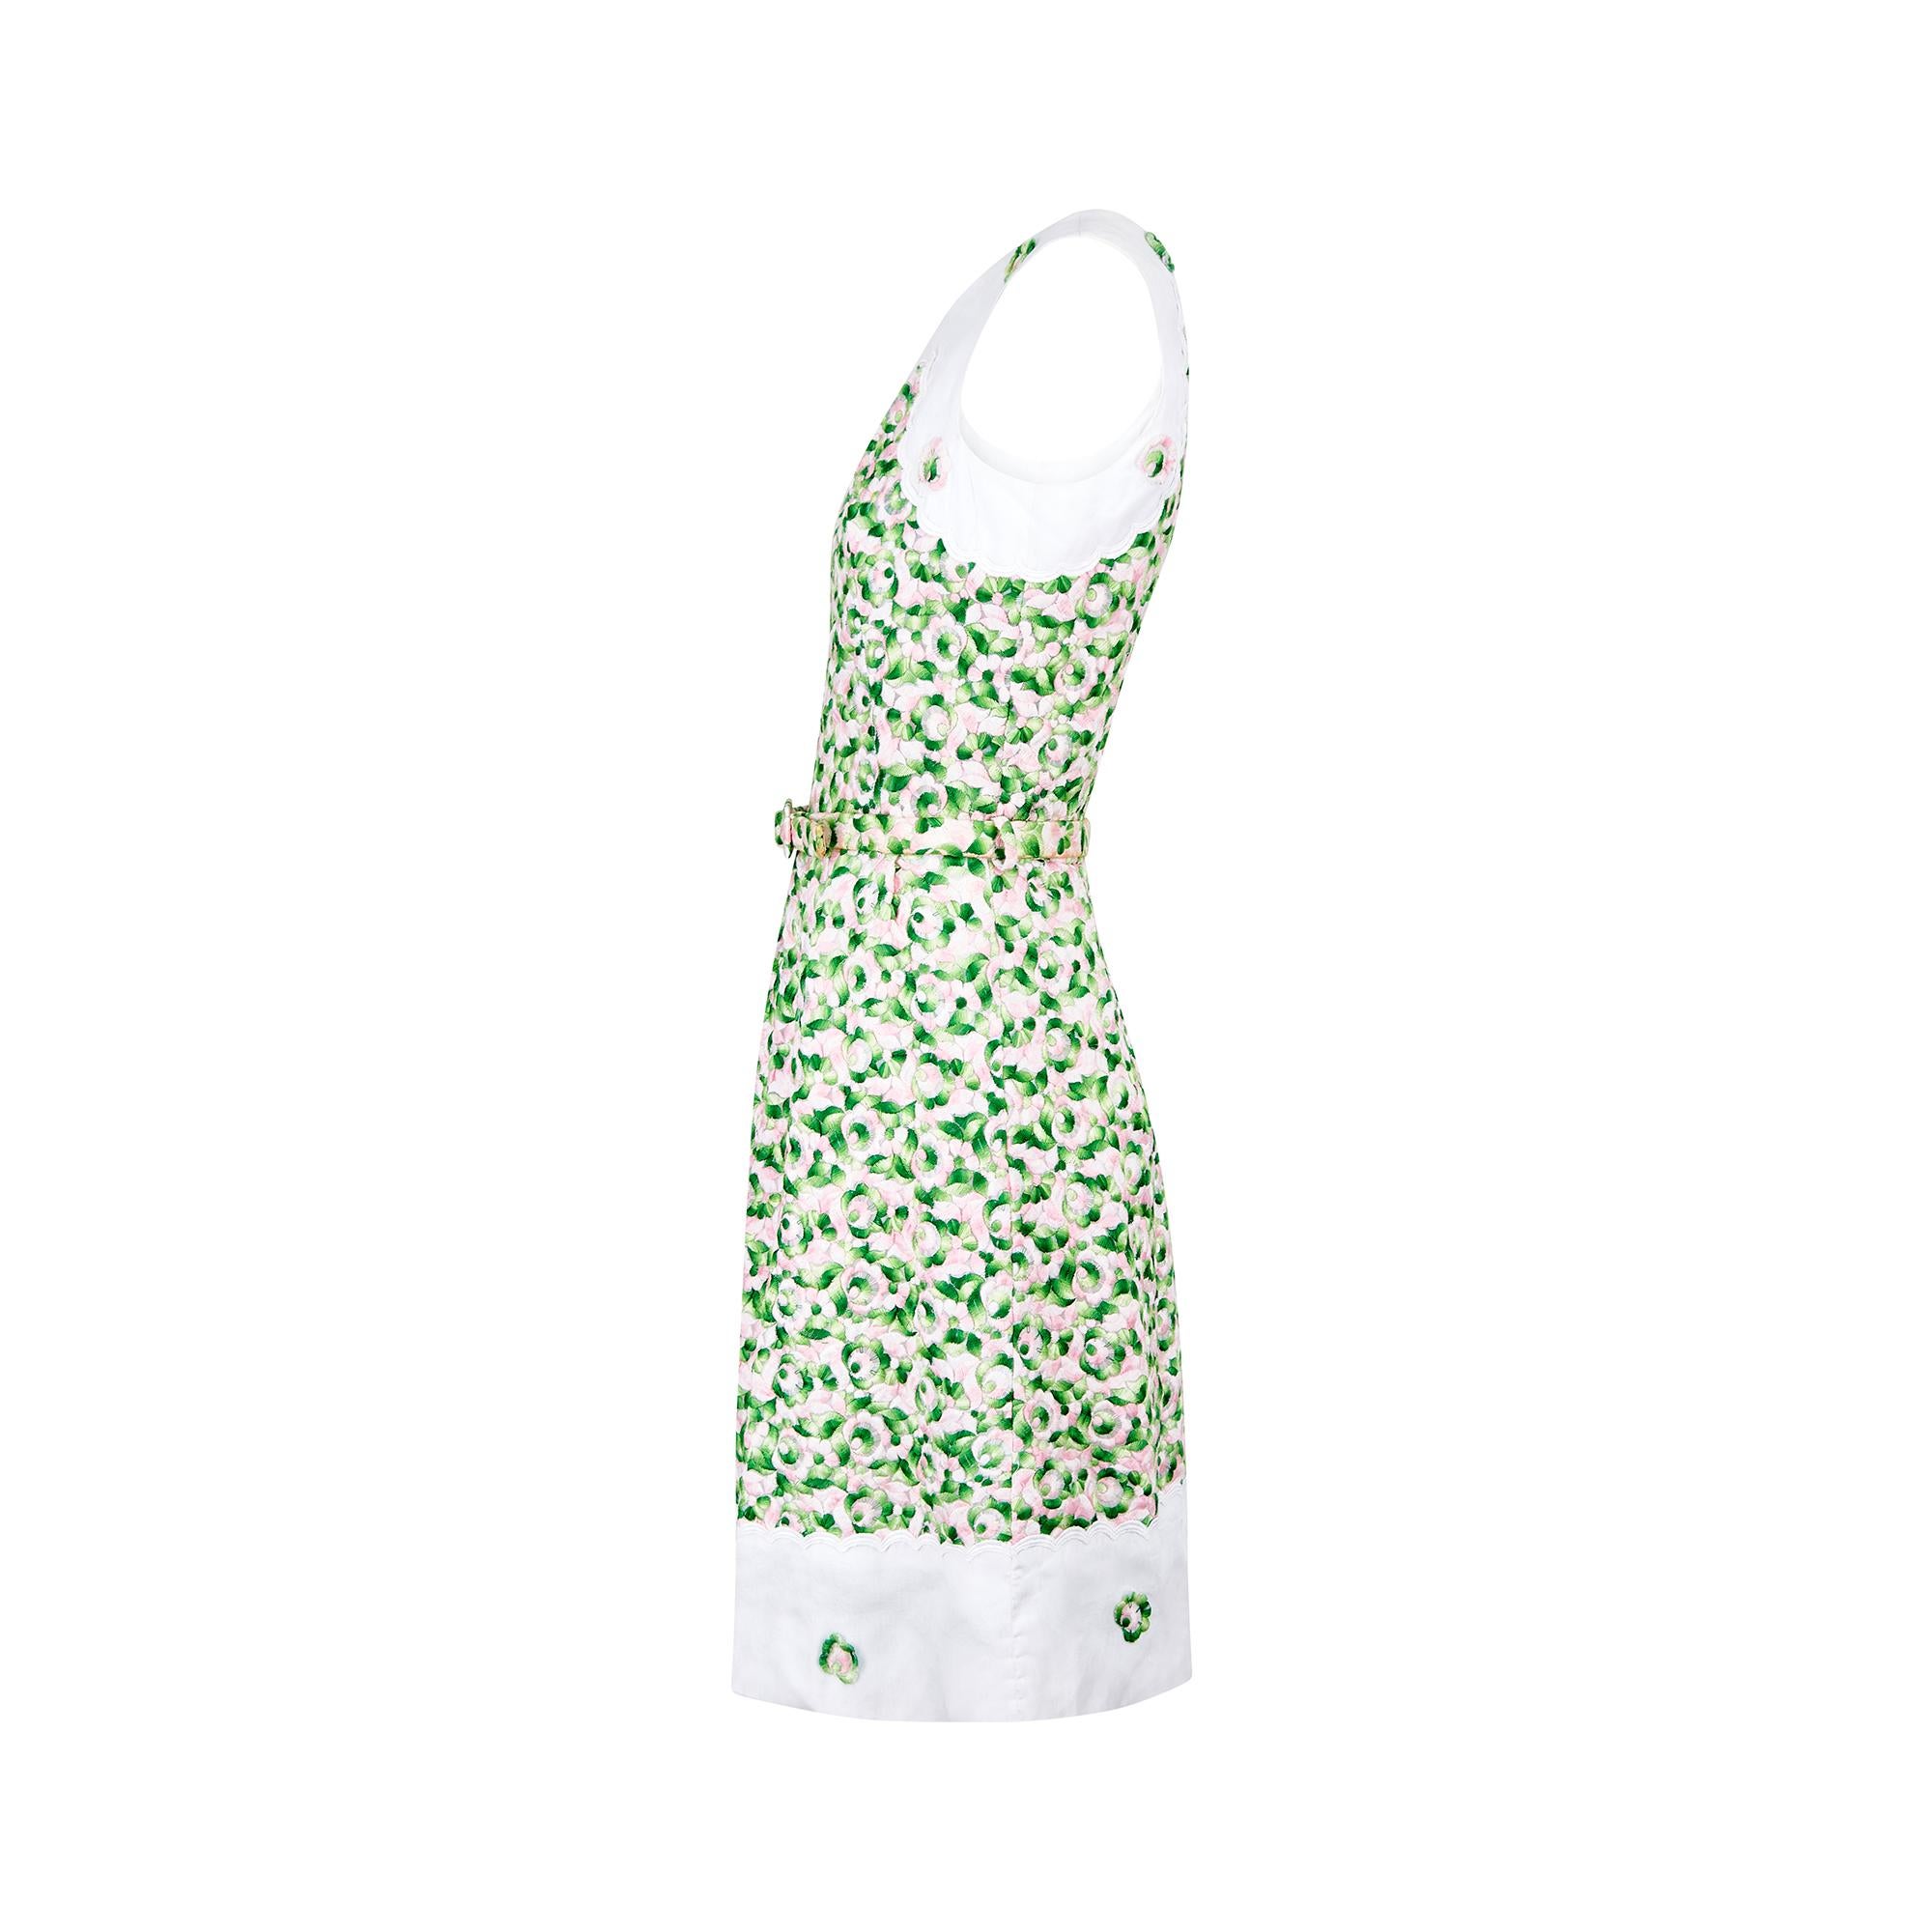 Brodée sur toute sa surface, cette robe des années 1960 est parsemée de fleurs roses et vertes ombrées.  L'étiquette indique Lyne Borel 38 Avenue de L'opera Paris et il est clair qu'elle était une couturière formée à la couture.  À noter que